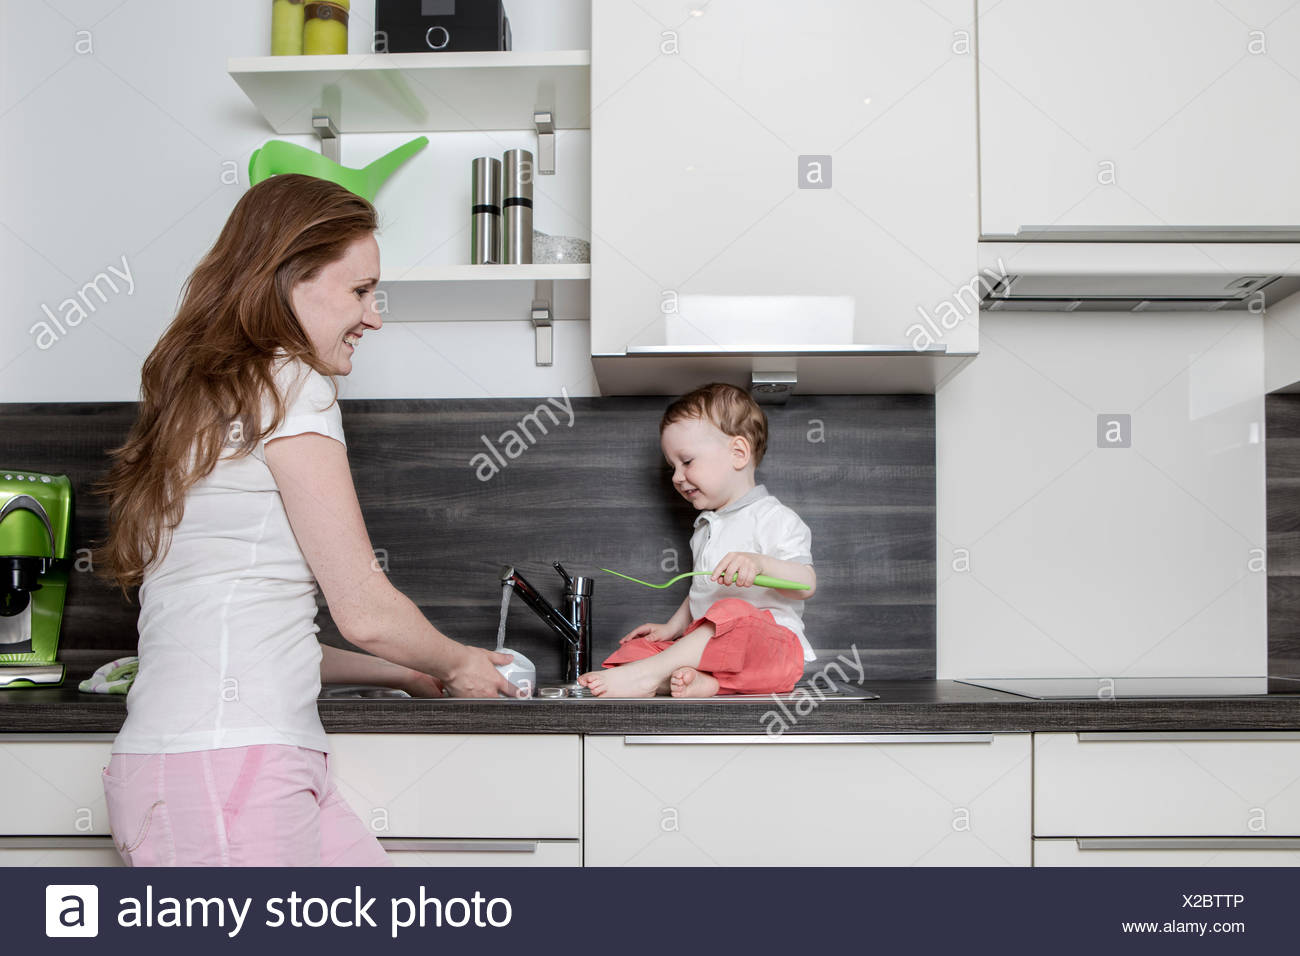 baby boy kitchen